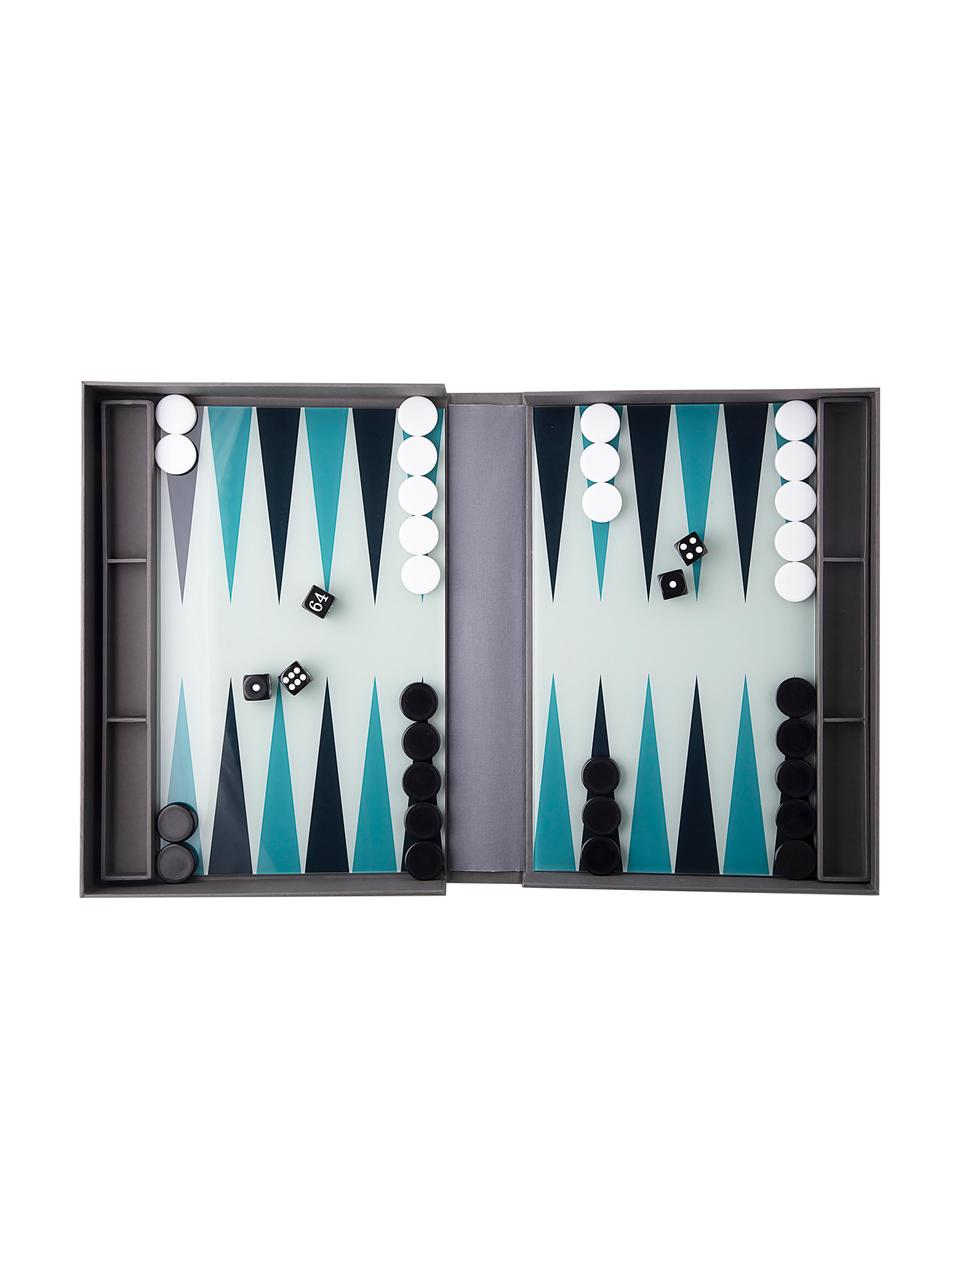 Je de Backgammon Classic, Papier, acrylique, Gris, noir, turquoise, blanc, larg. 31 x haut. 5 cm